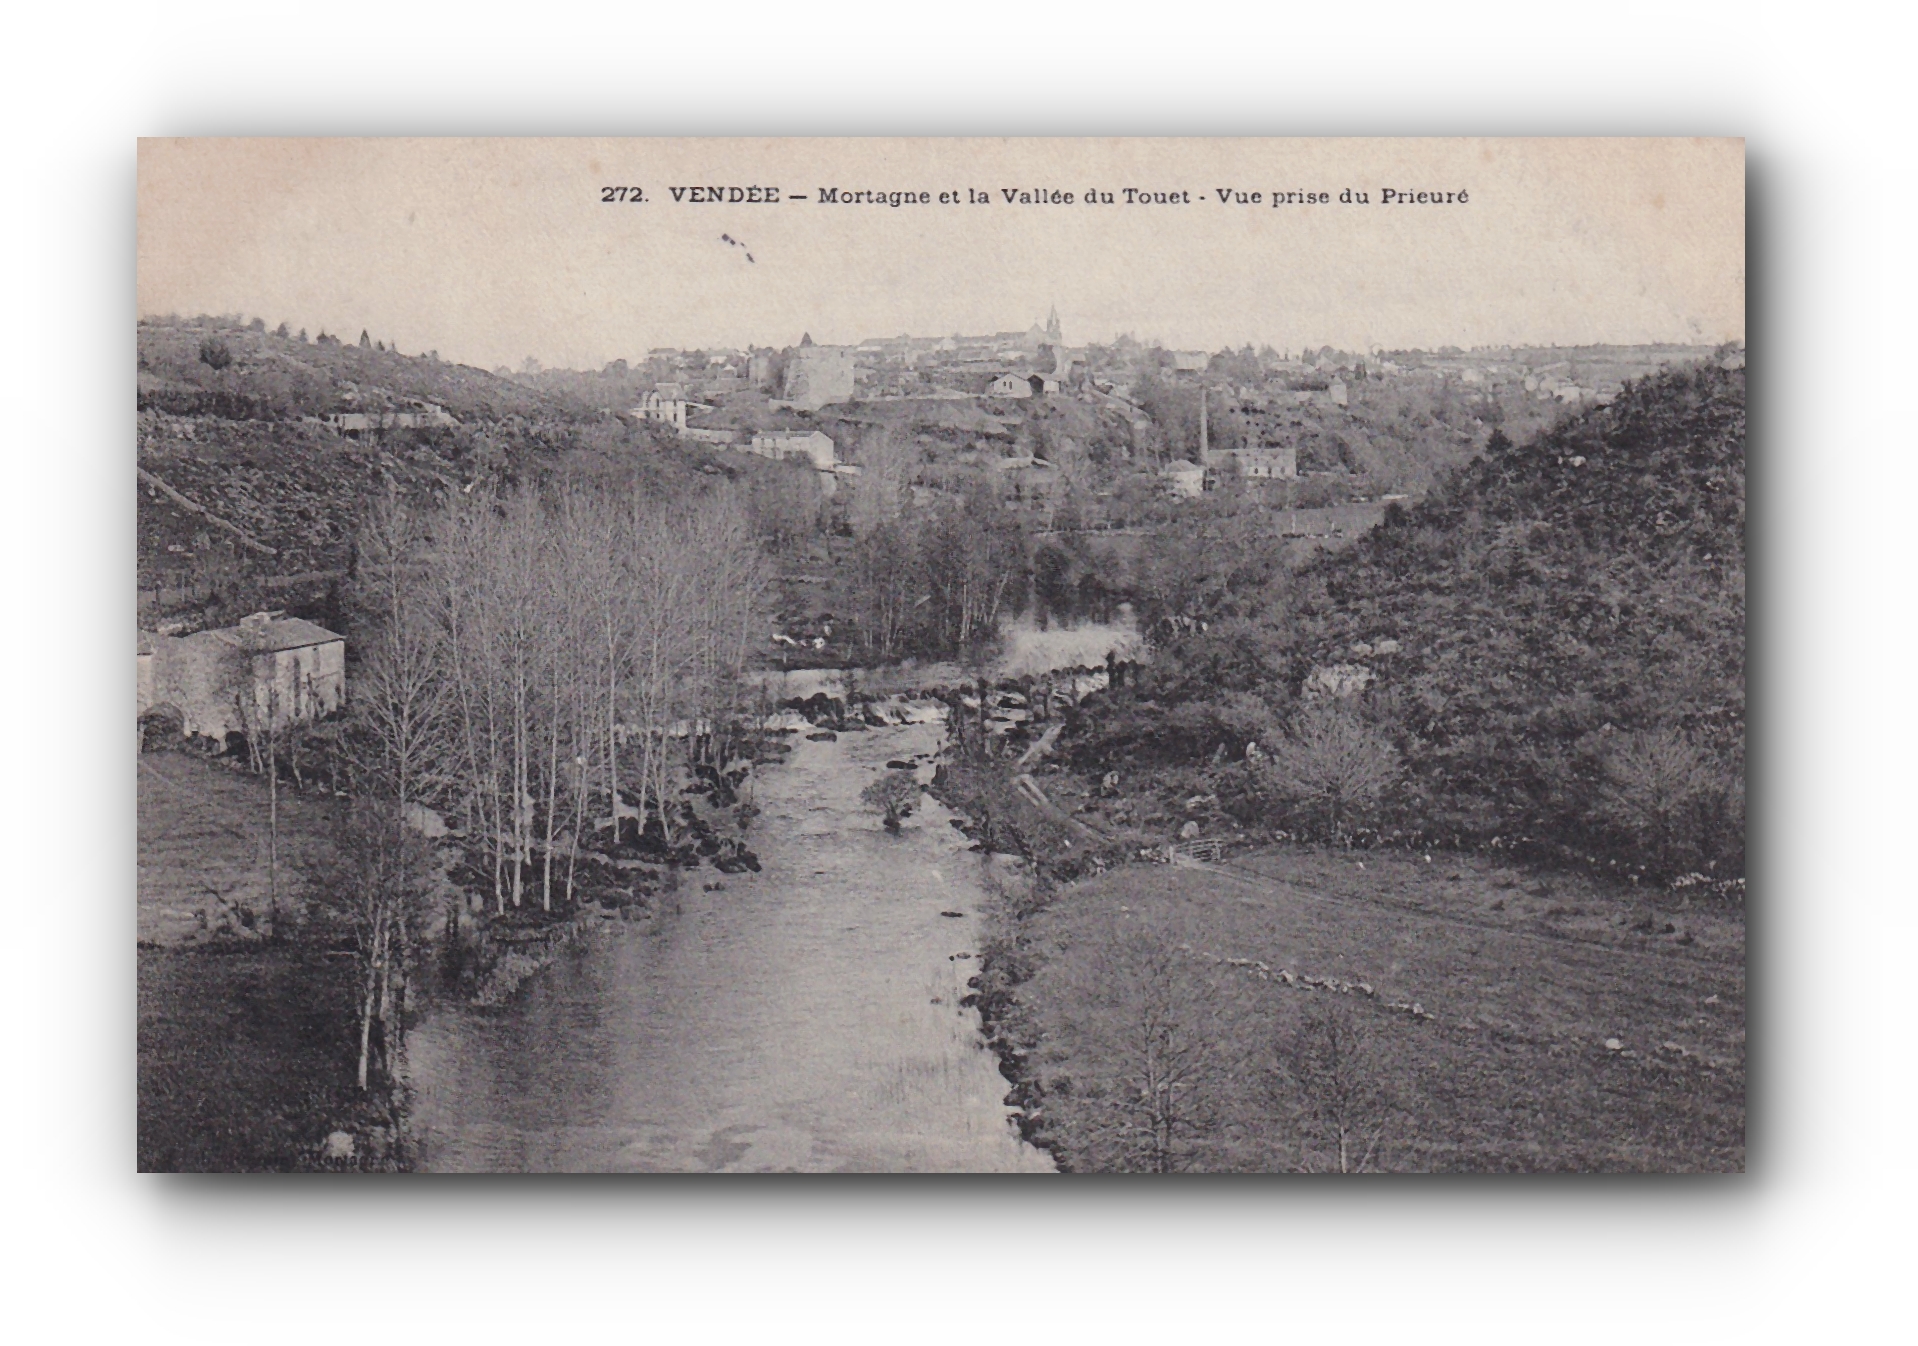 - MORTAGNE et la Vallée du Touet - Vendée - 25.05.1905 -